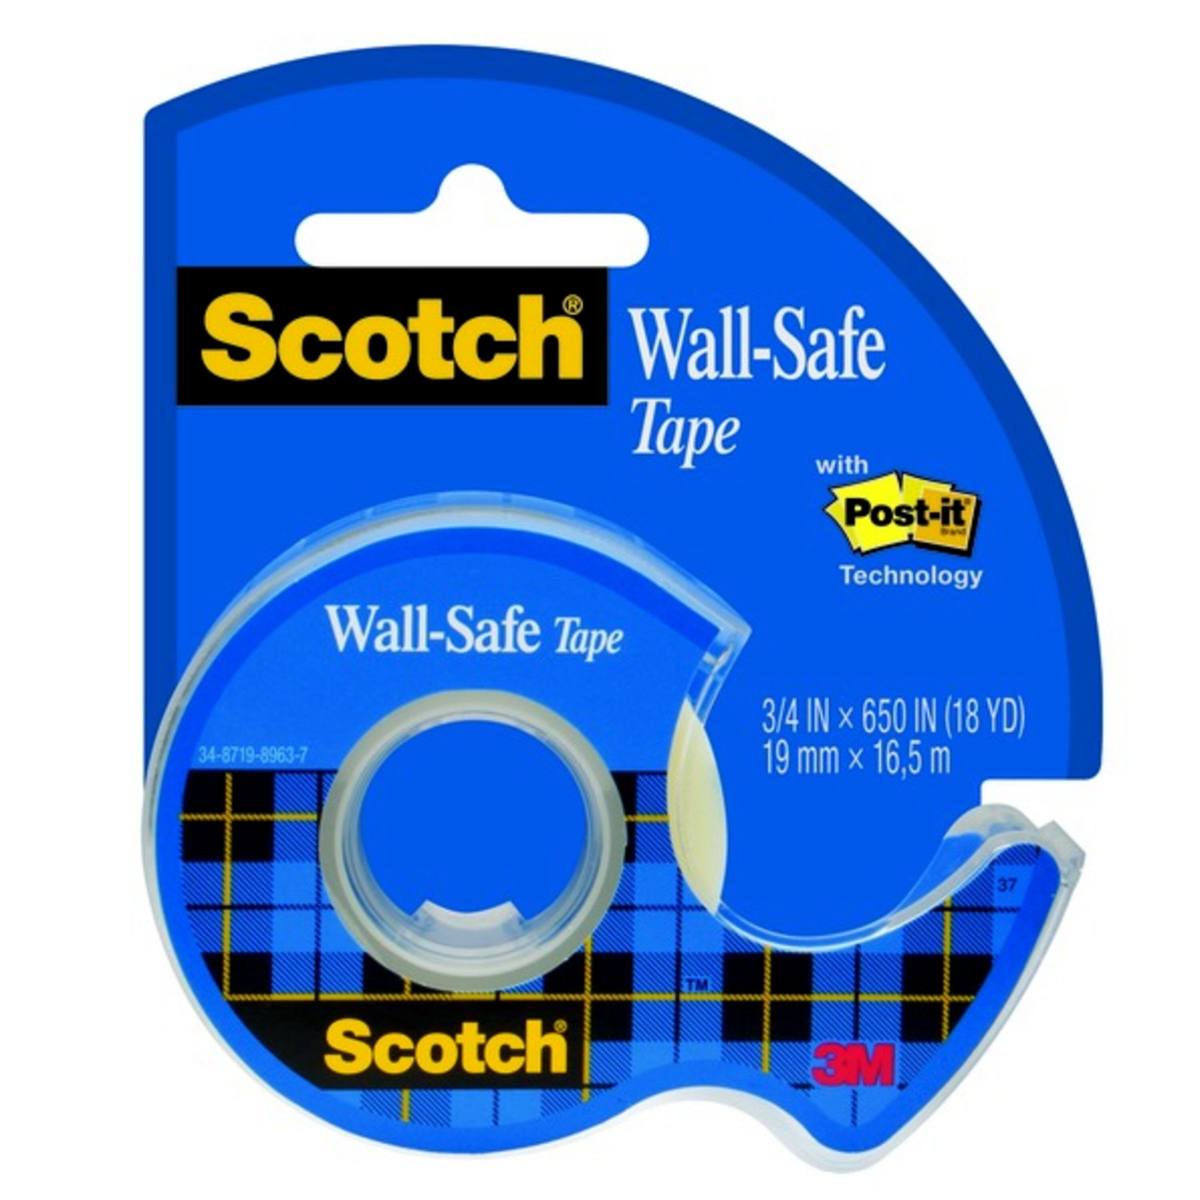 3M Scotch Wall-Safe teippi 19 mm x 16,5 m 1 rulla, 1 maxi-annostelija.